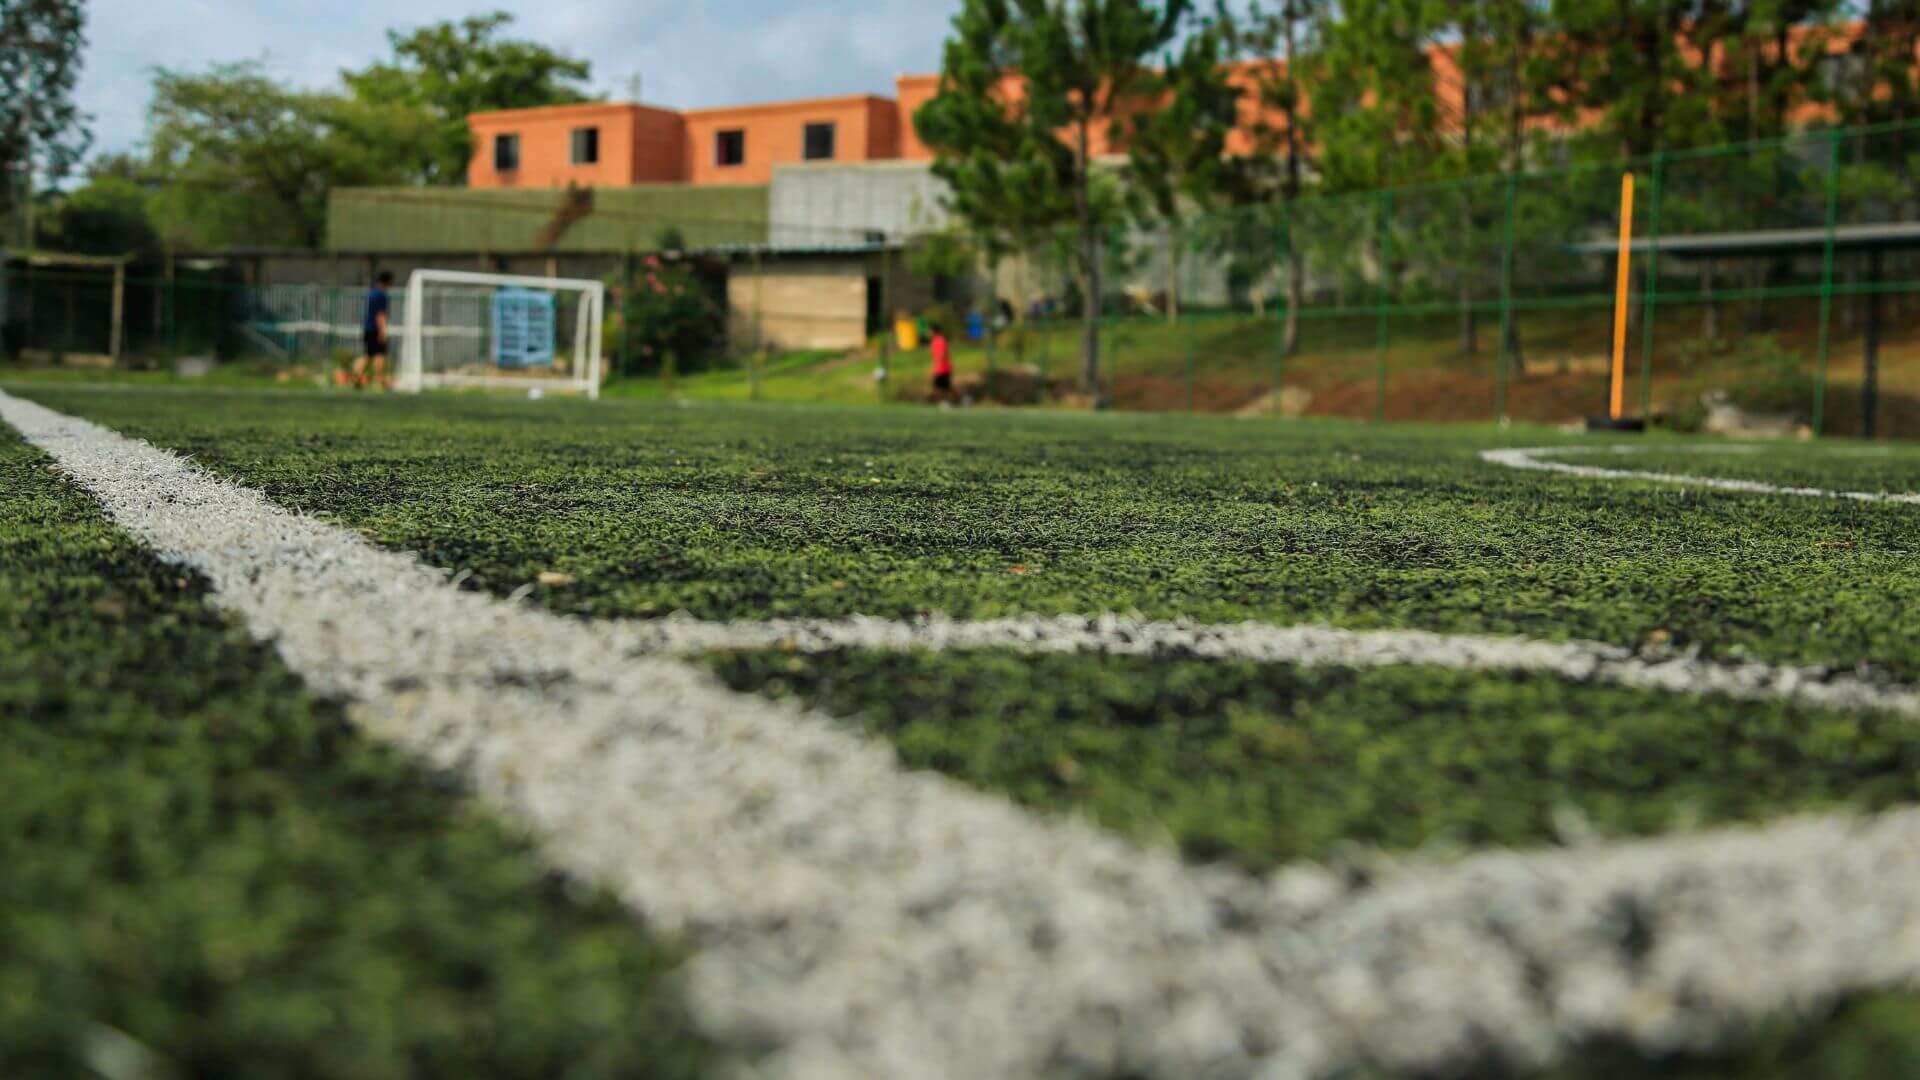 Turf soccer field